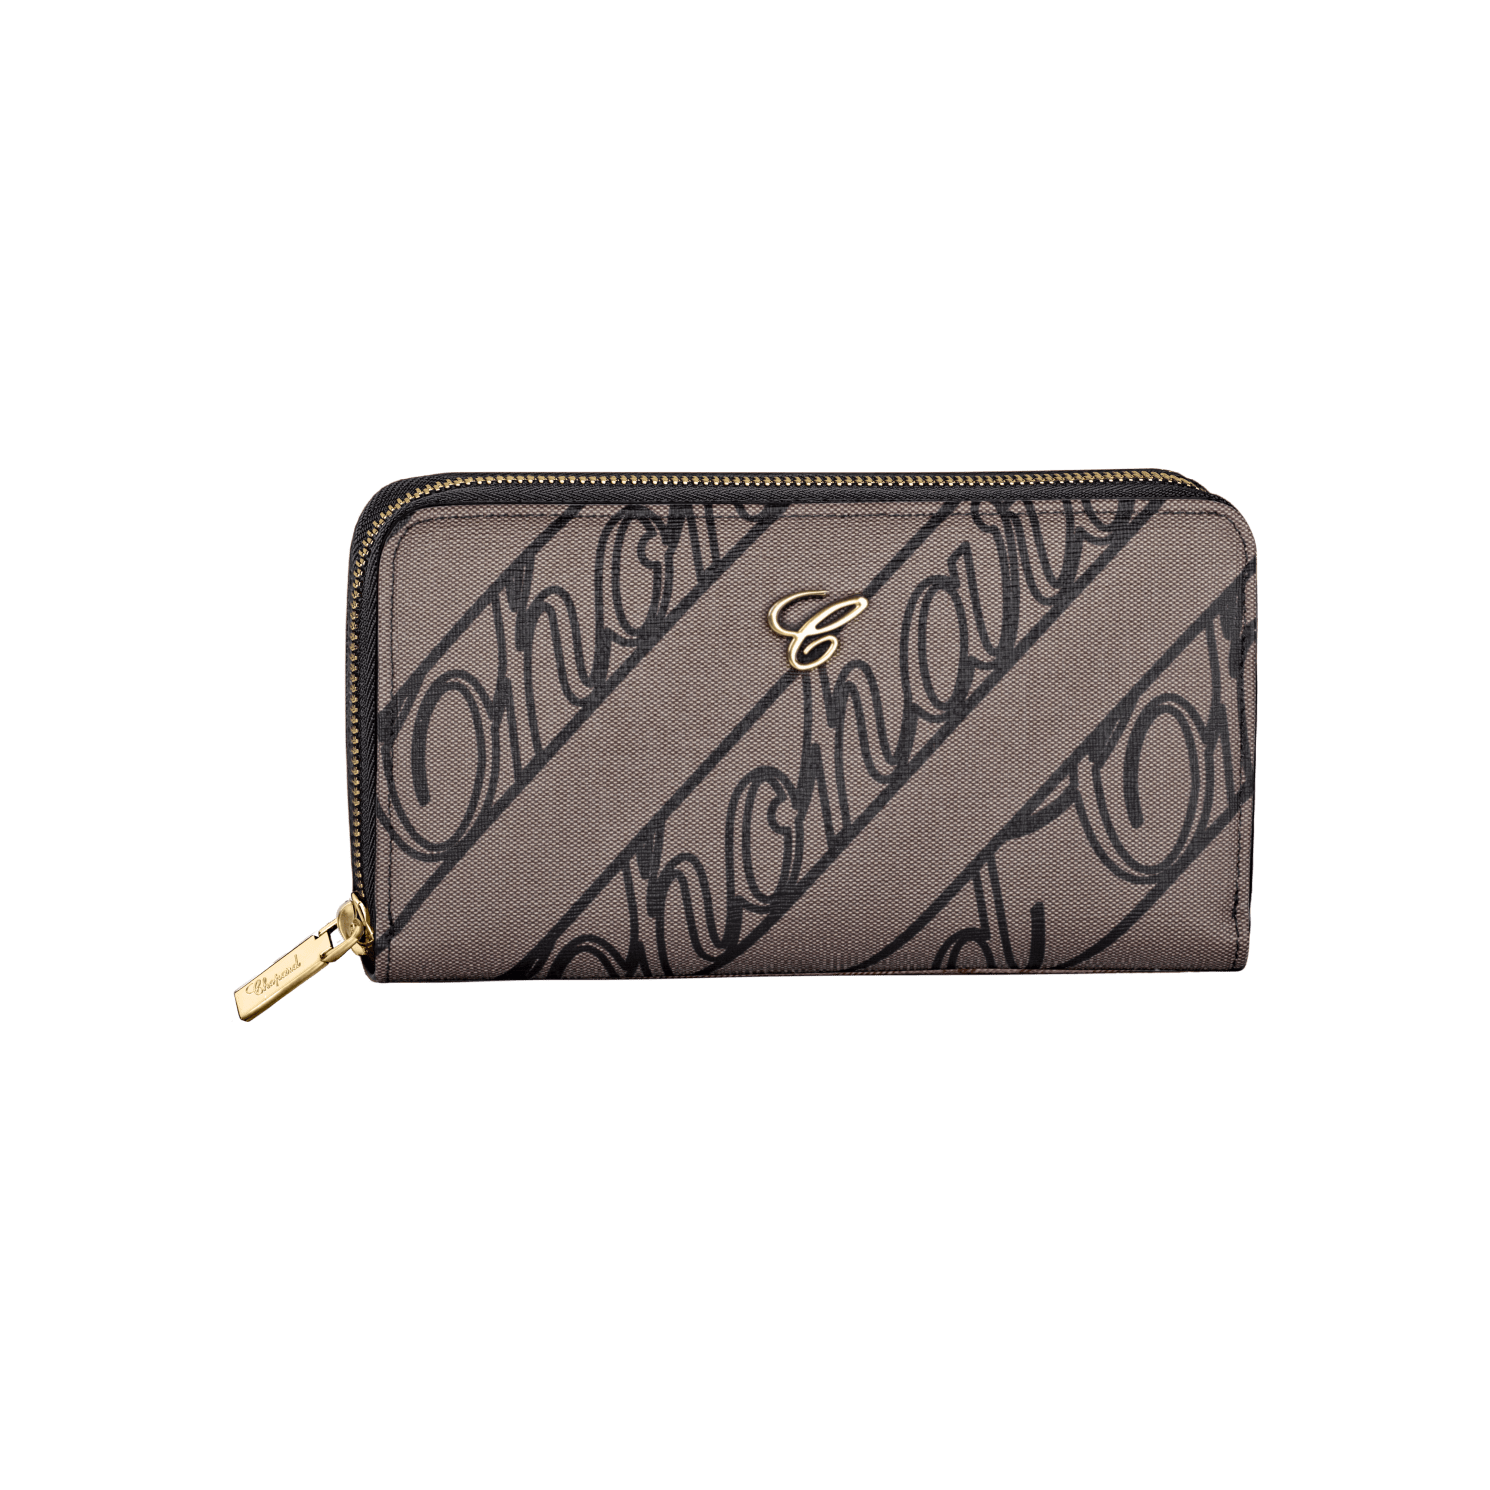 Zipped wallet